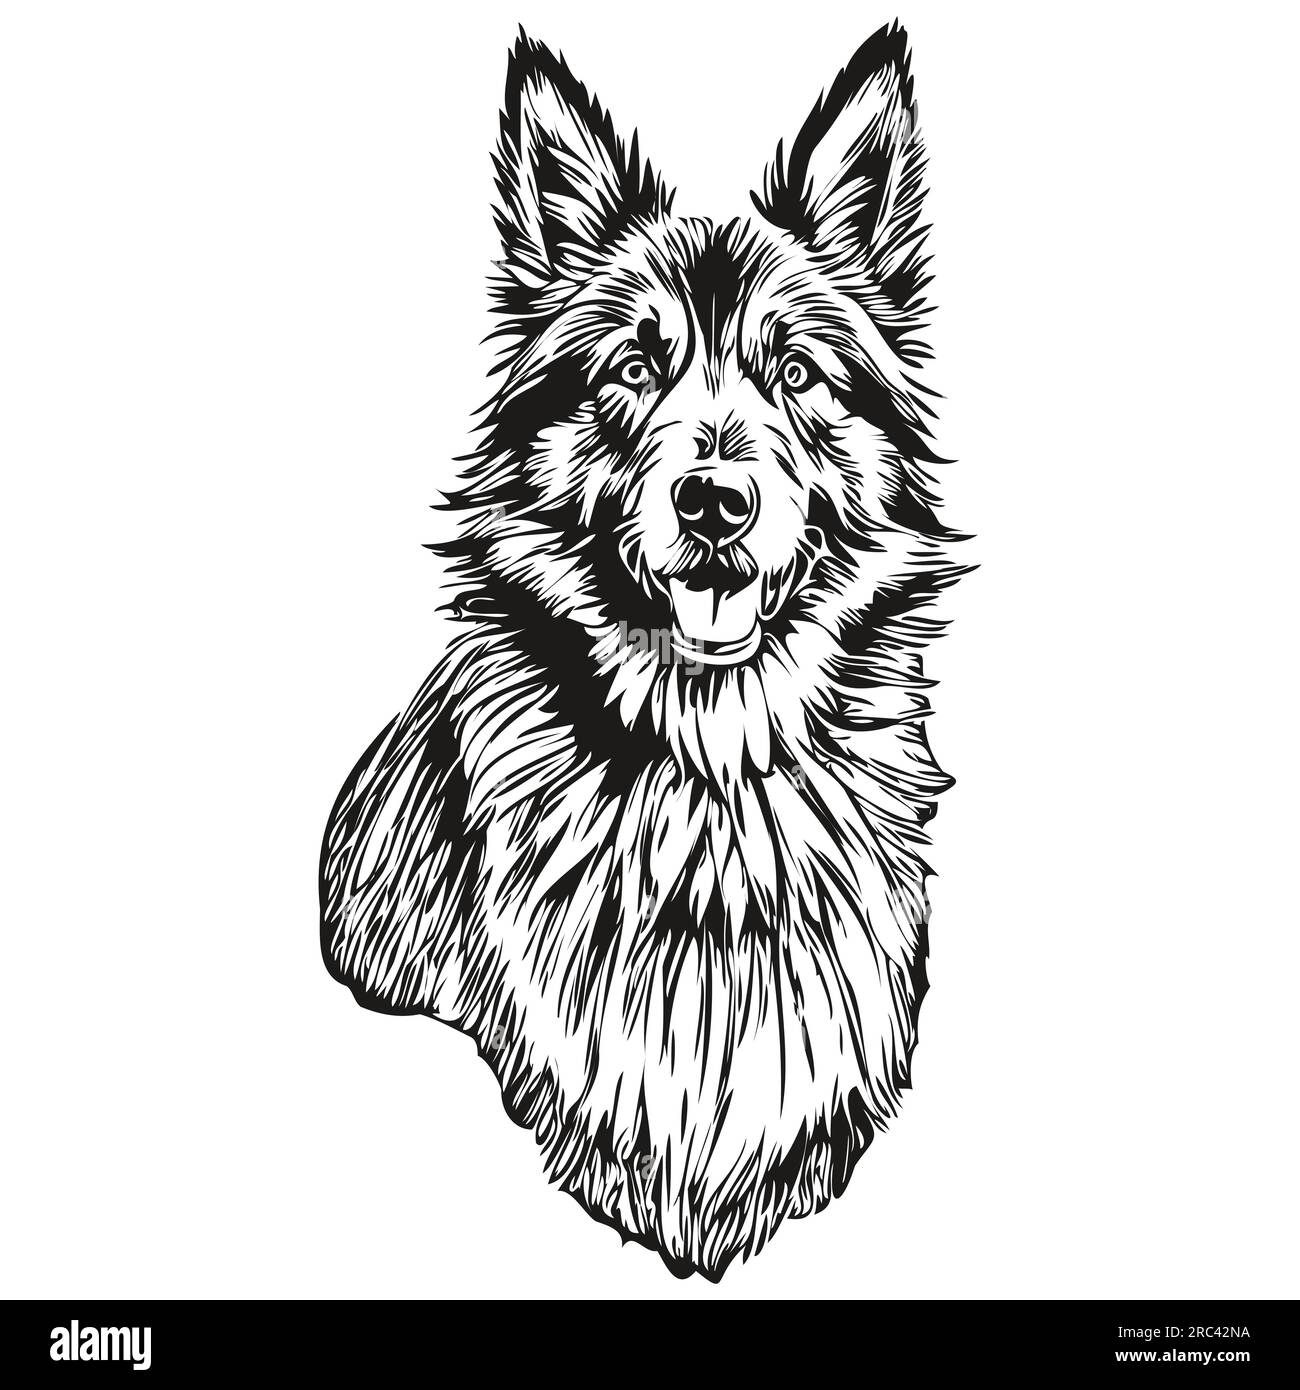 Dessin au trait de race de chien belge Tervuren, dessin à la main animal clip art dessin à la main dessin noir et blanc Illustration de Vecteur